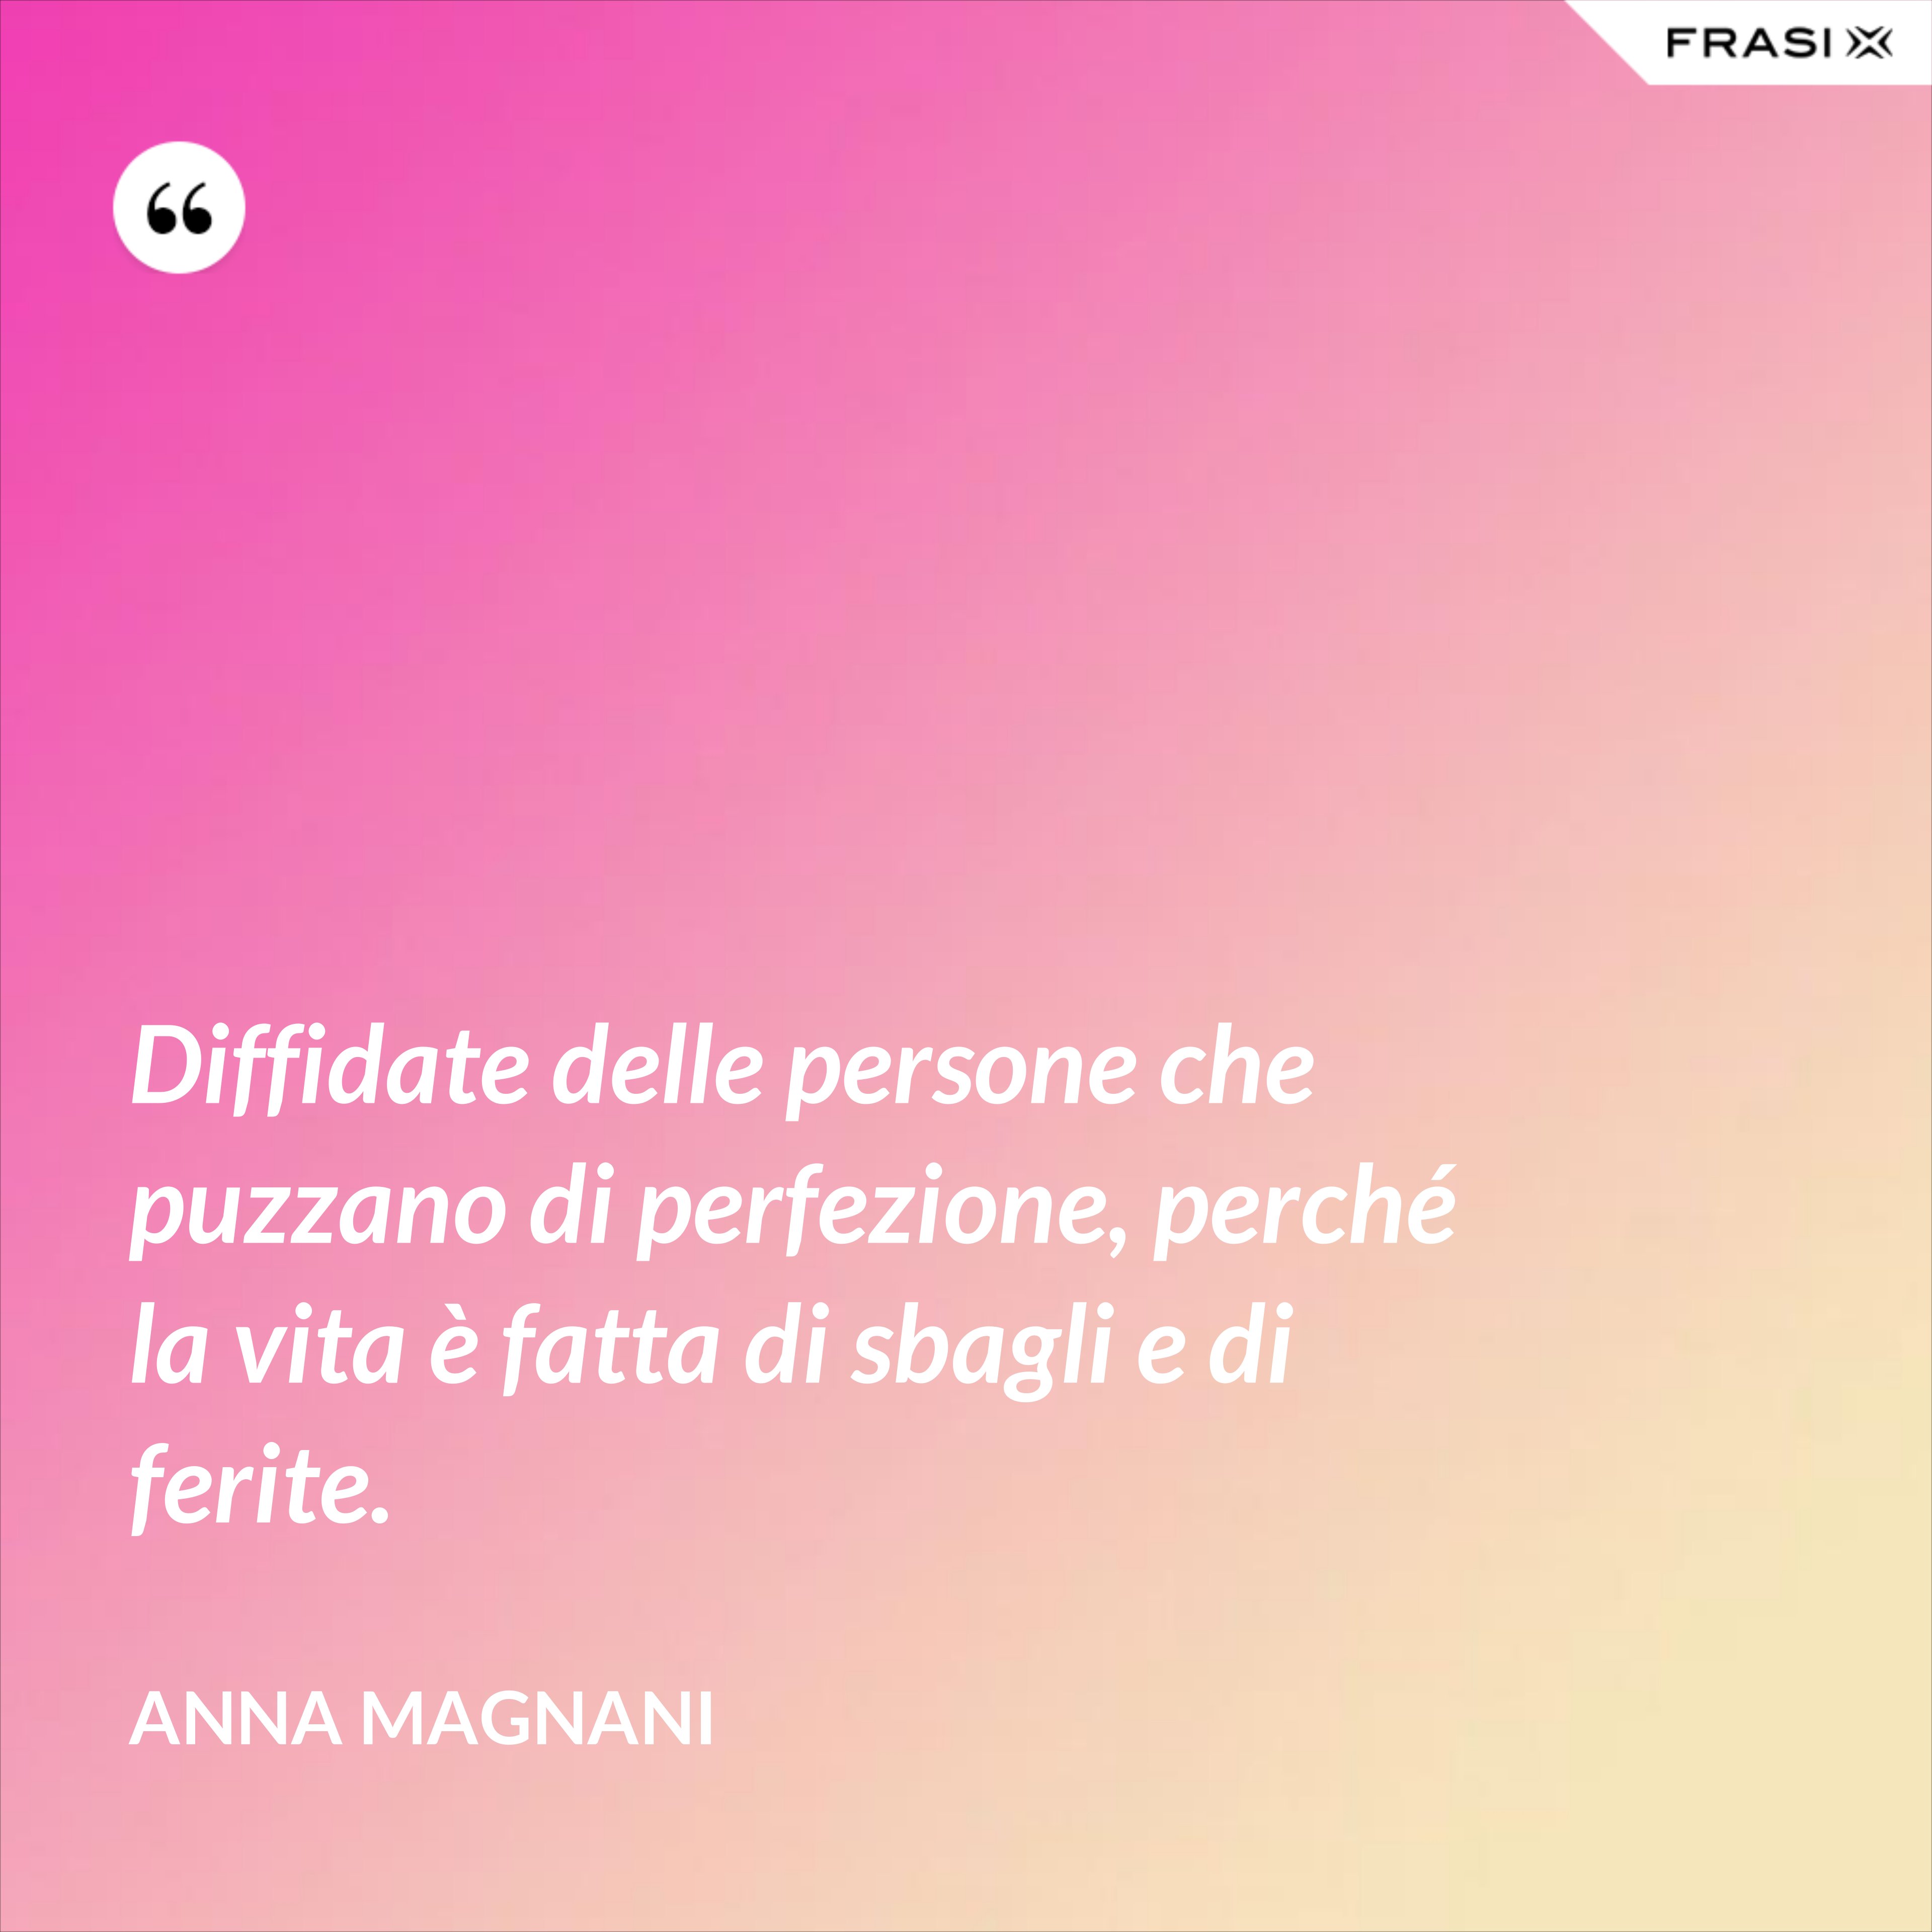 Diffidate delle persone che puzzano di perfezione, perché la vita è fatta di sbagli e di ferite. - Anna Magnani